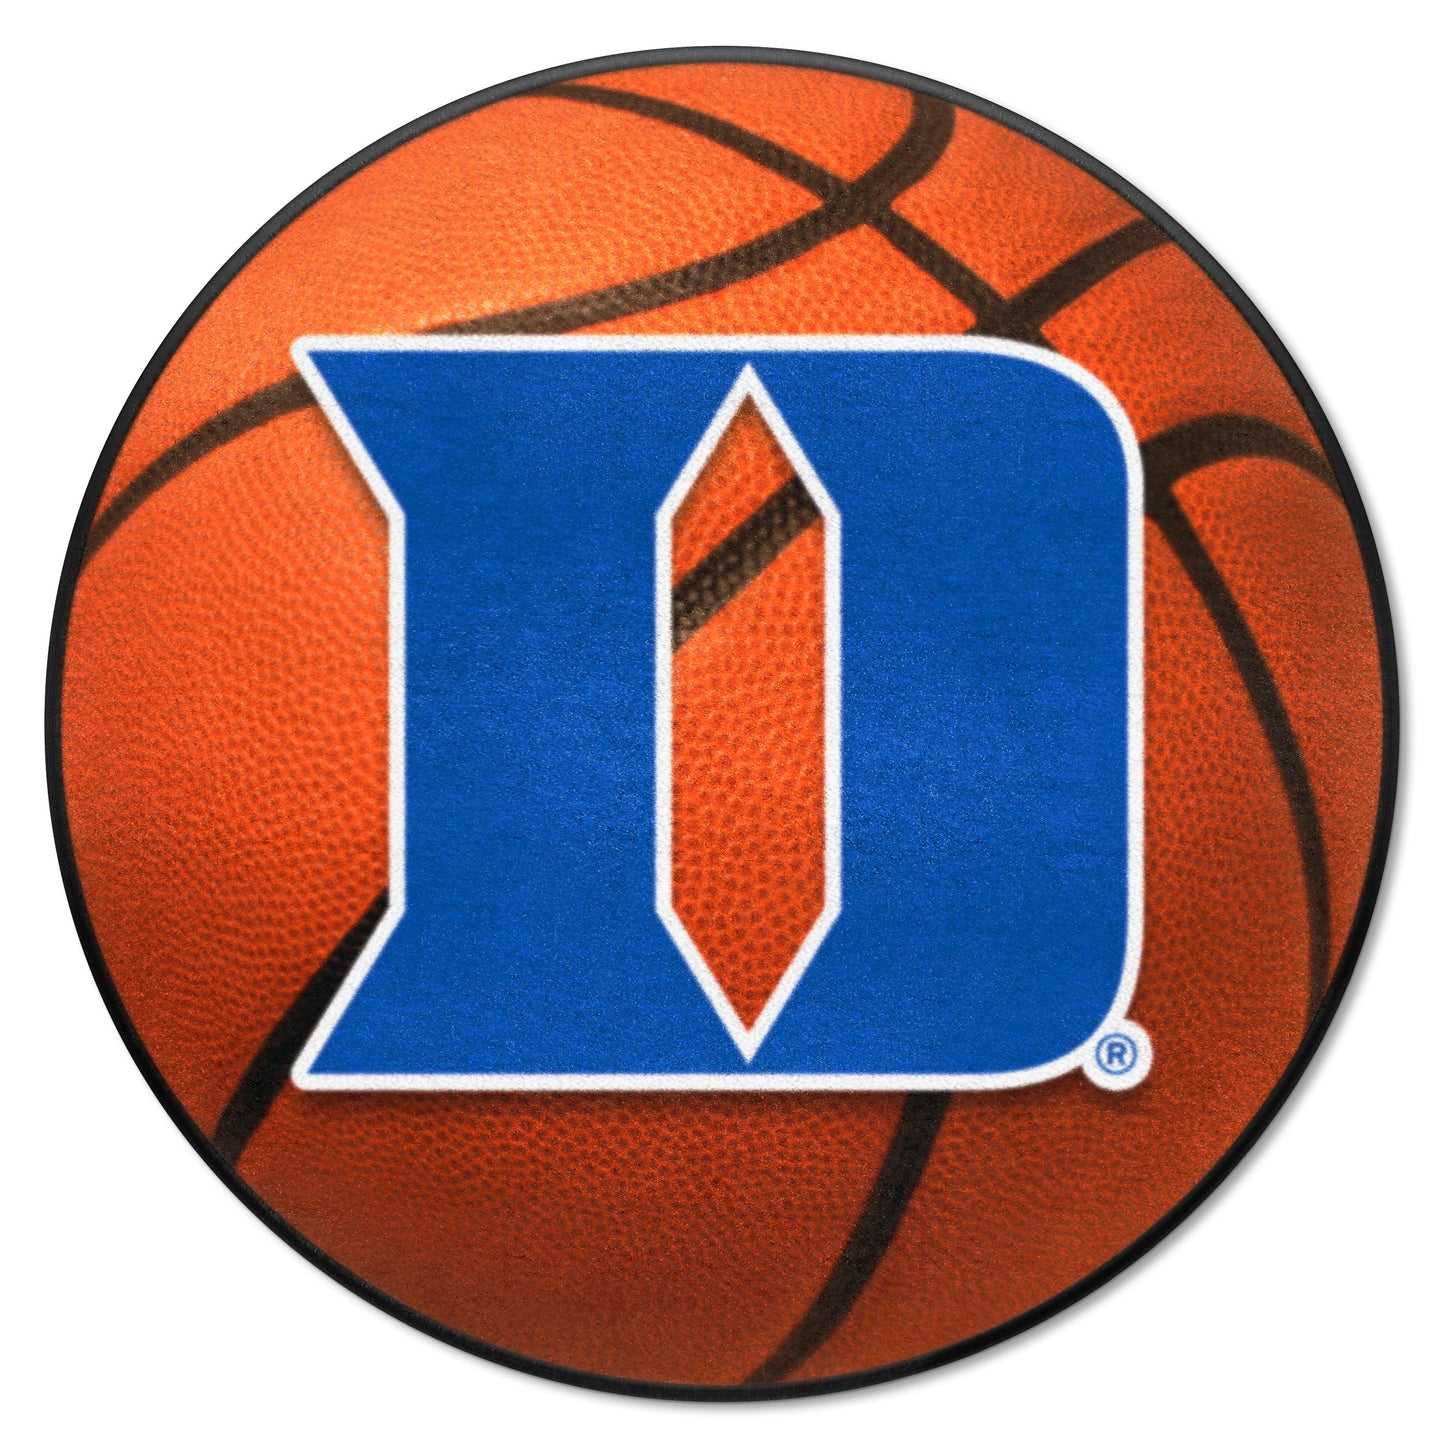 Duke Blue Devils Basketball Rug - 27in. Diameter - "D" Logo